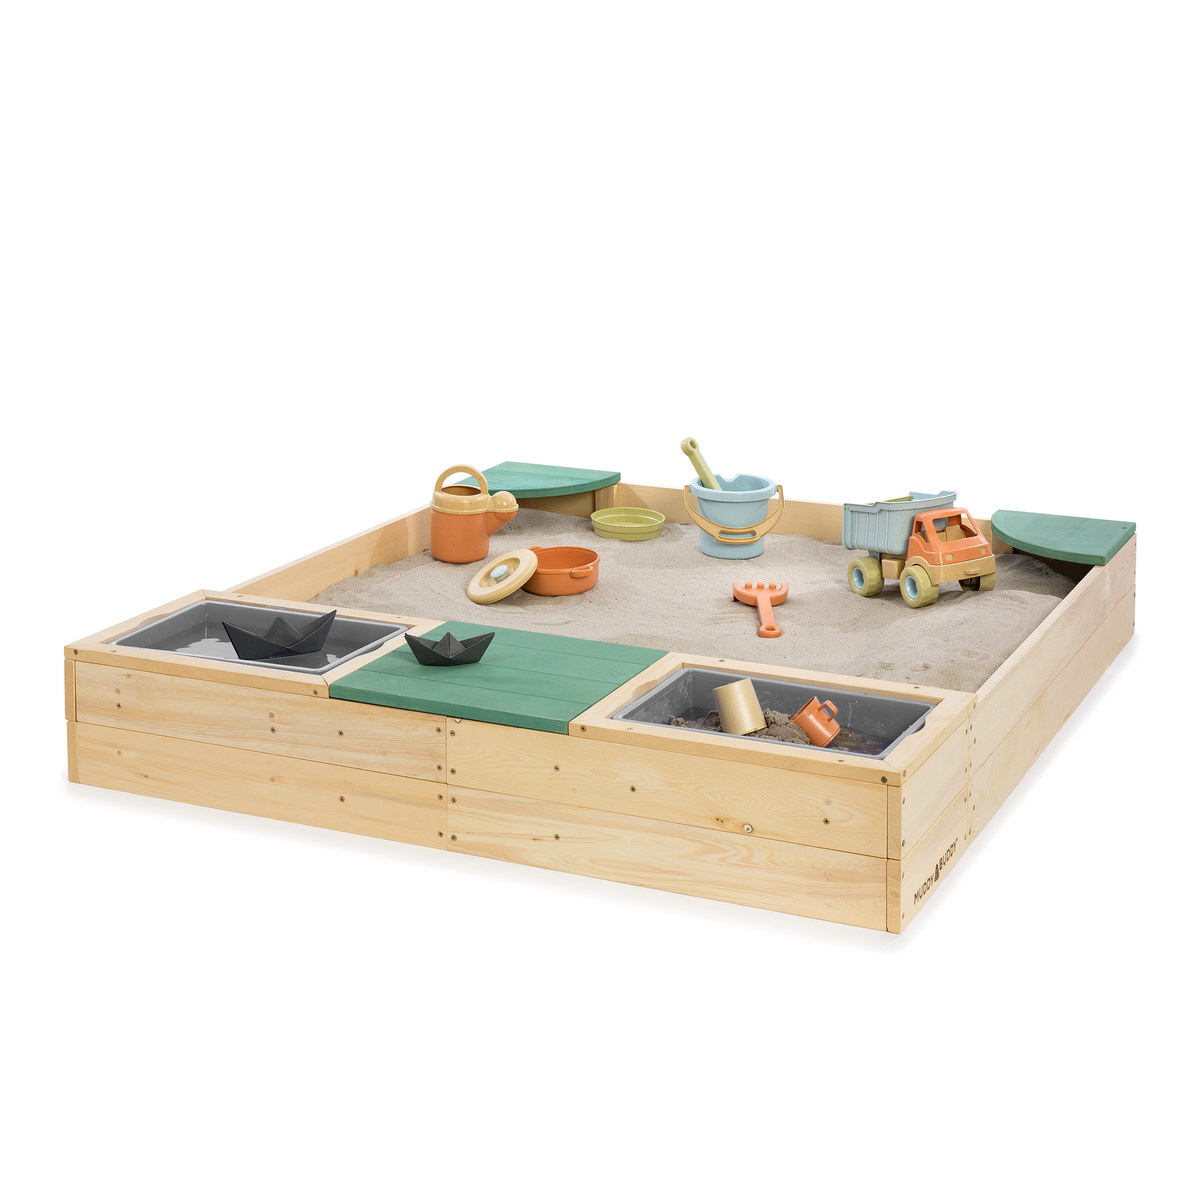 MUDDY BUDDY® einzigartige Outdoor-Spielzeuge aus Holz